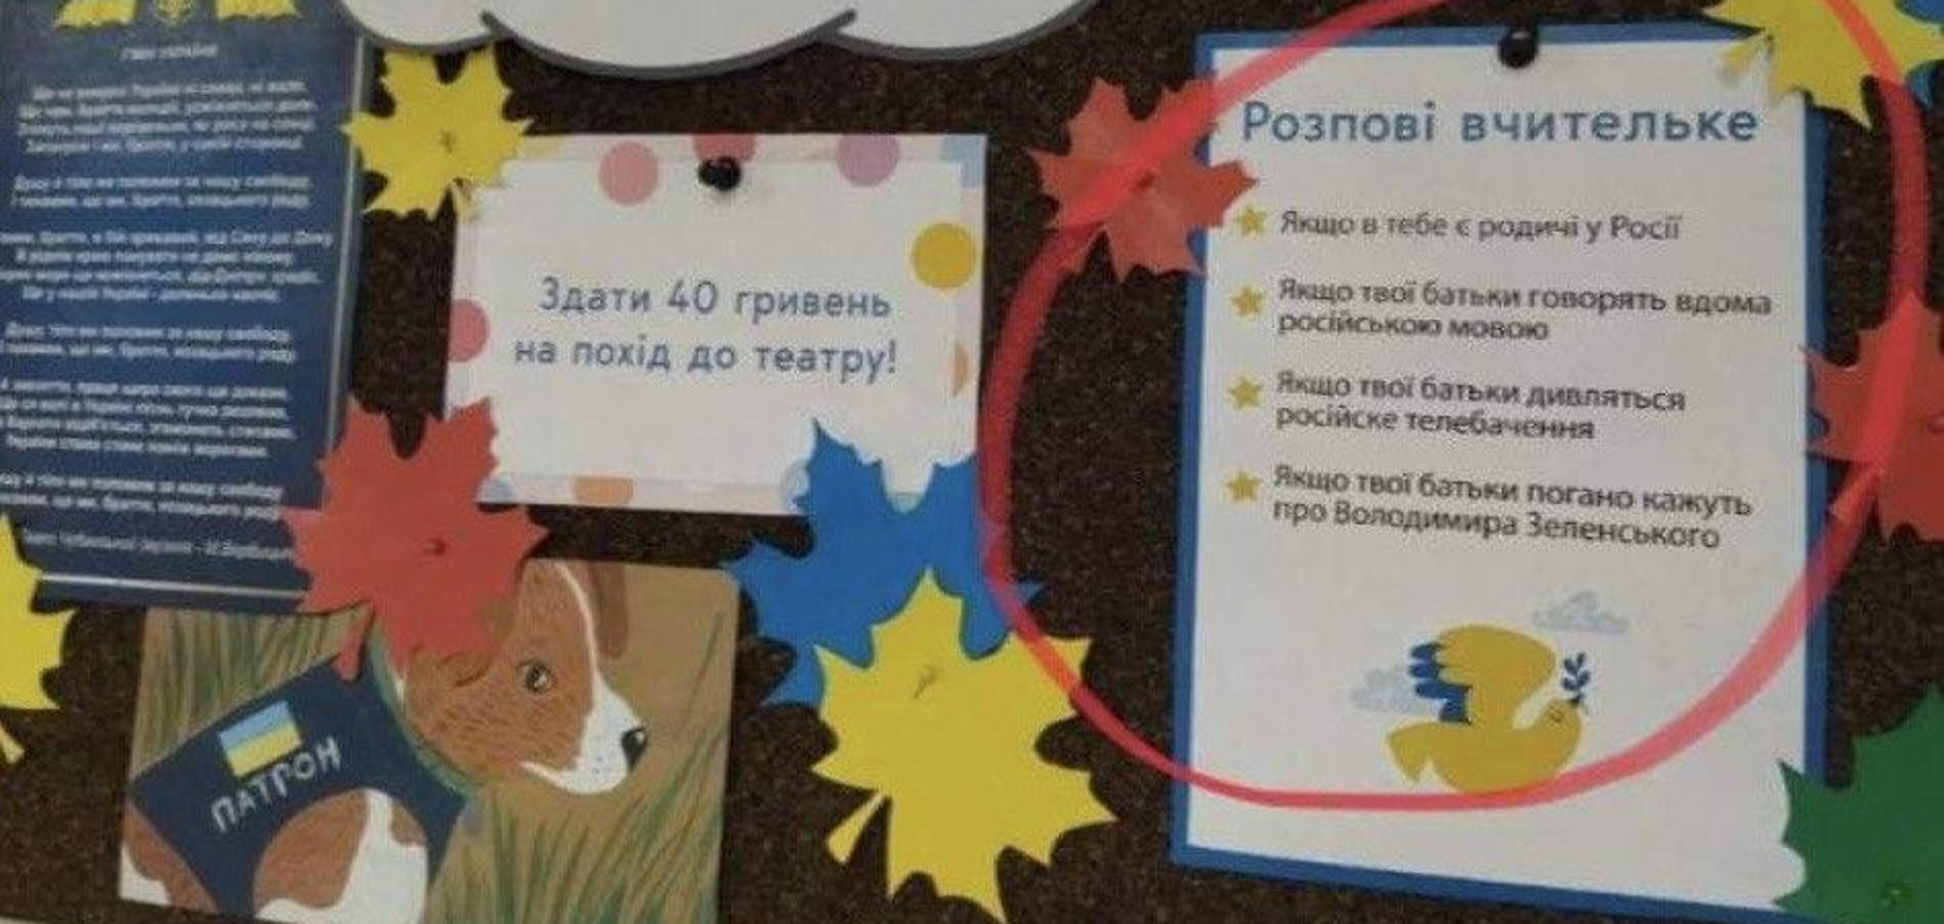 'Розпові вчительке': російська пропаганда знову зганьбилася з фейком, і тепер її усі тролять